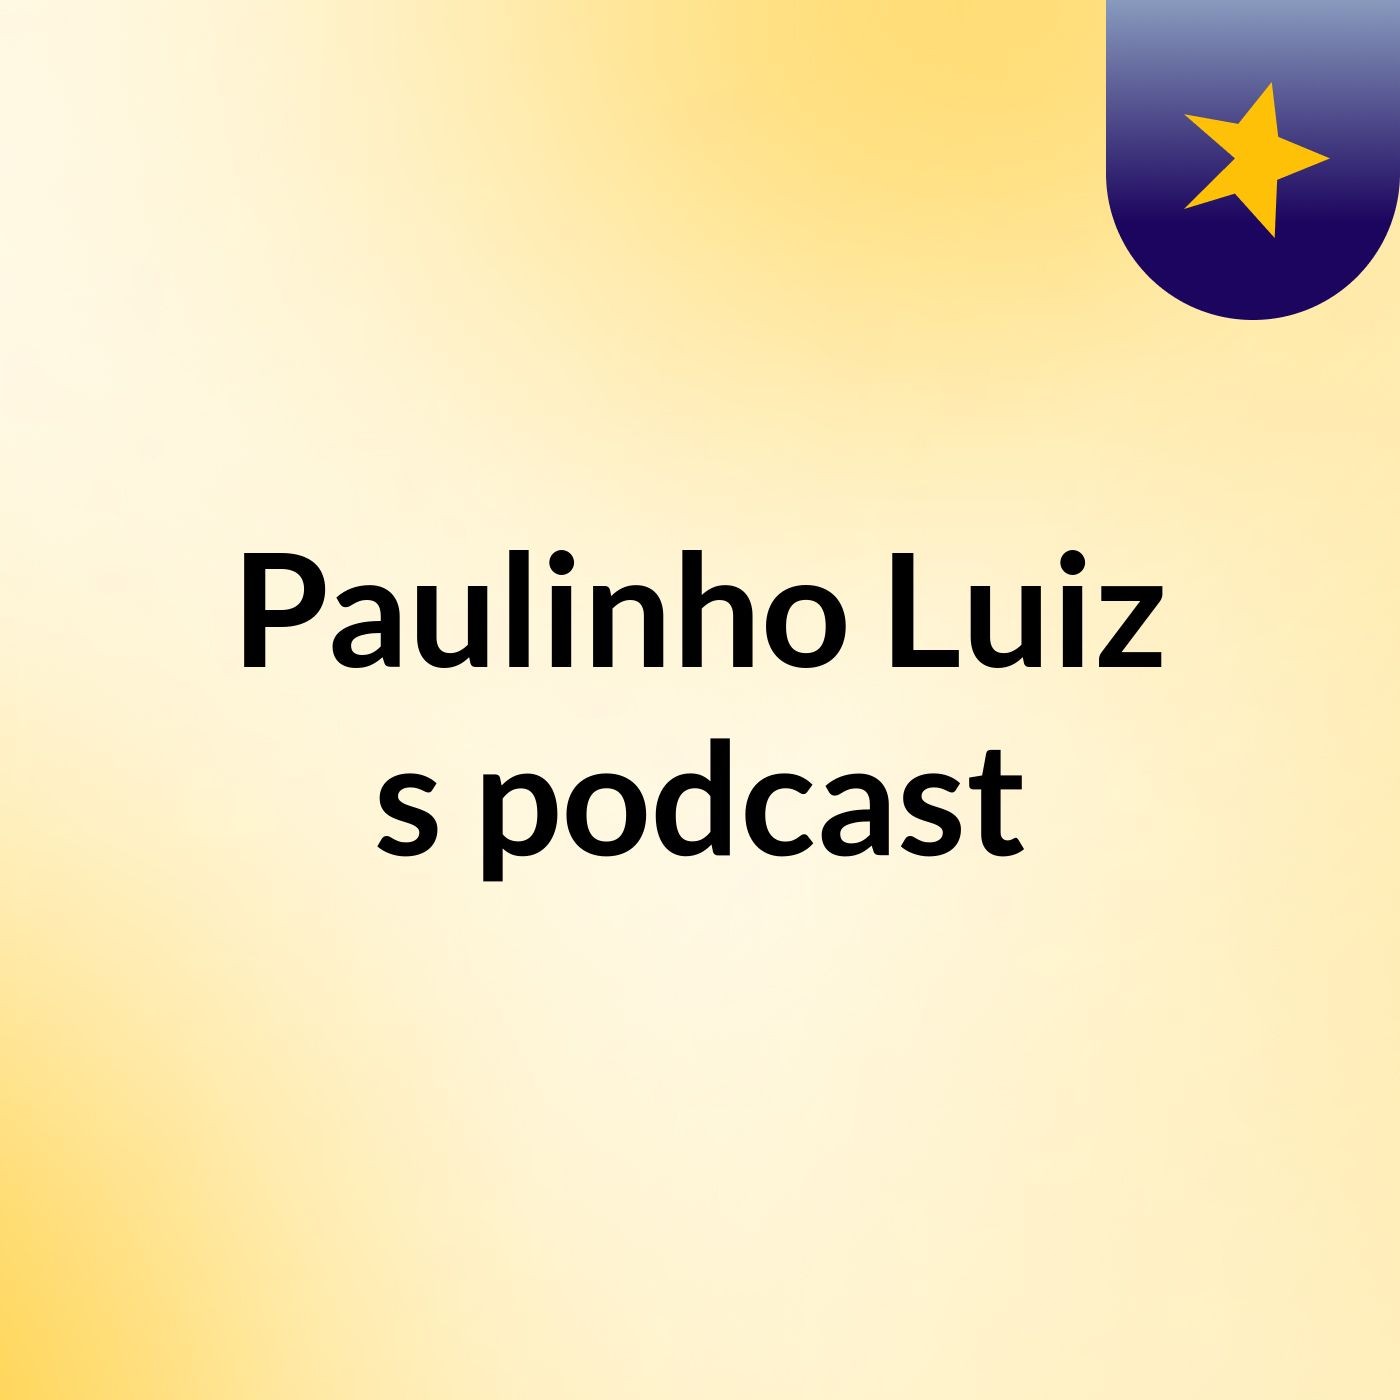 Paulinho Luiz's podcast